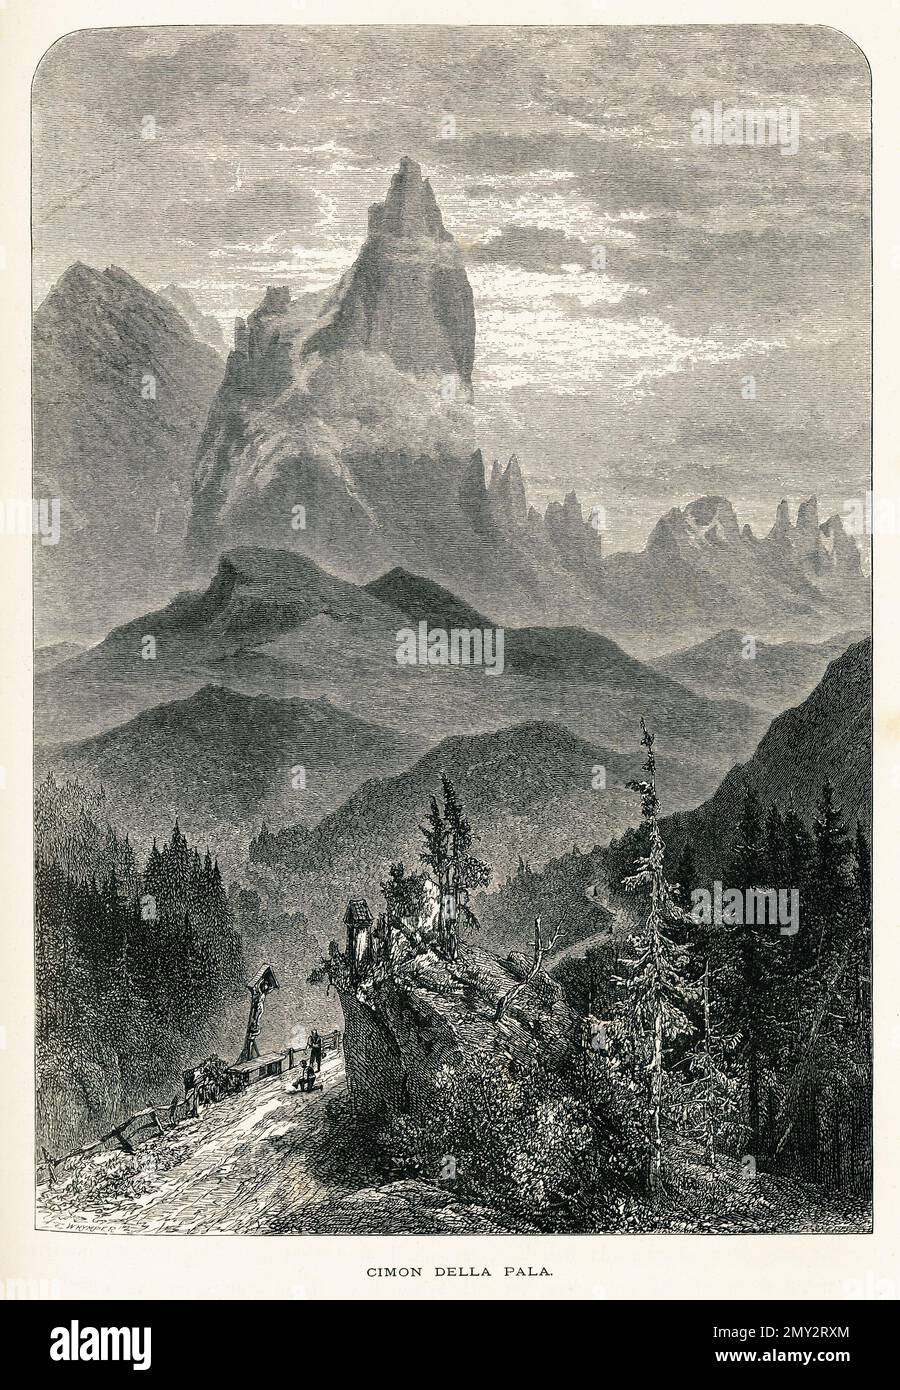 Incisione del 19th° secolo del Cimon della pala, la vetta più famosa del gruppo delle pale di San Martino, nelle Dolomiti. Illustrazione pubblicata in Foto Stock